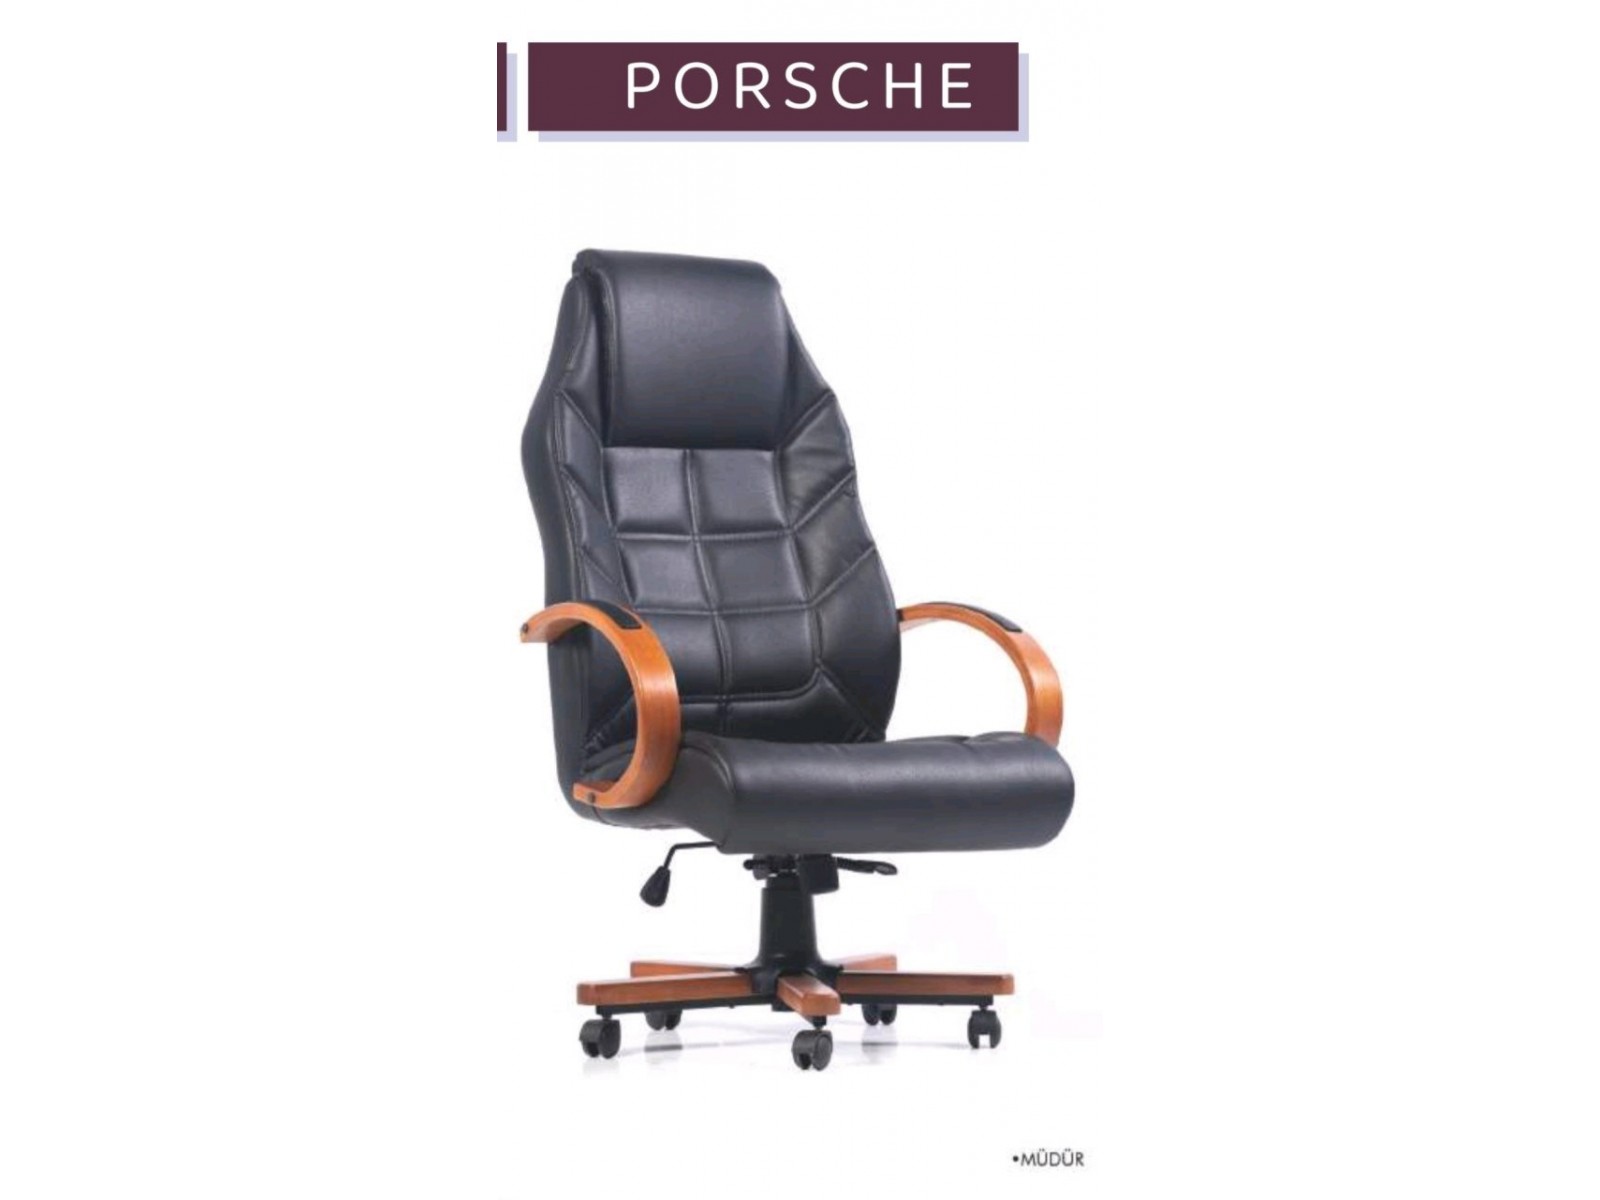 Porsche makam koltuğu